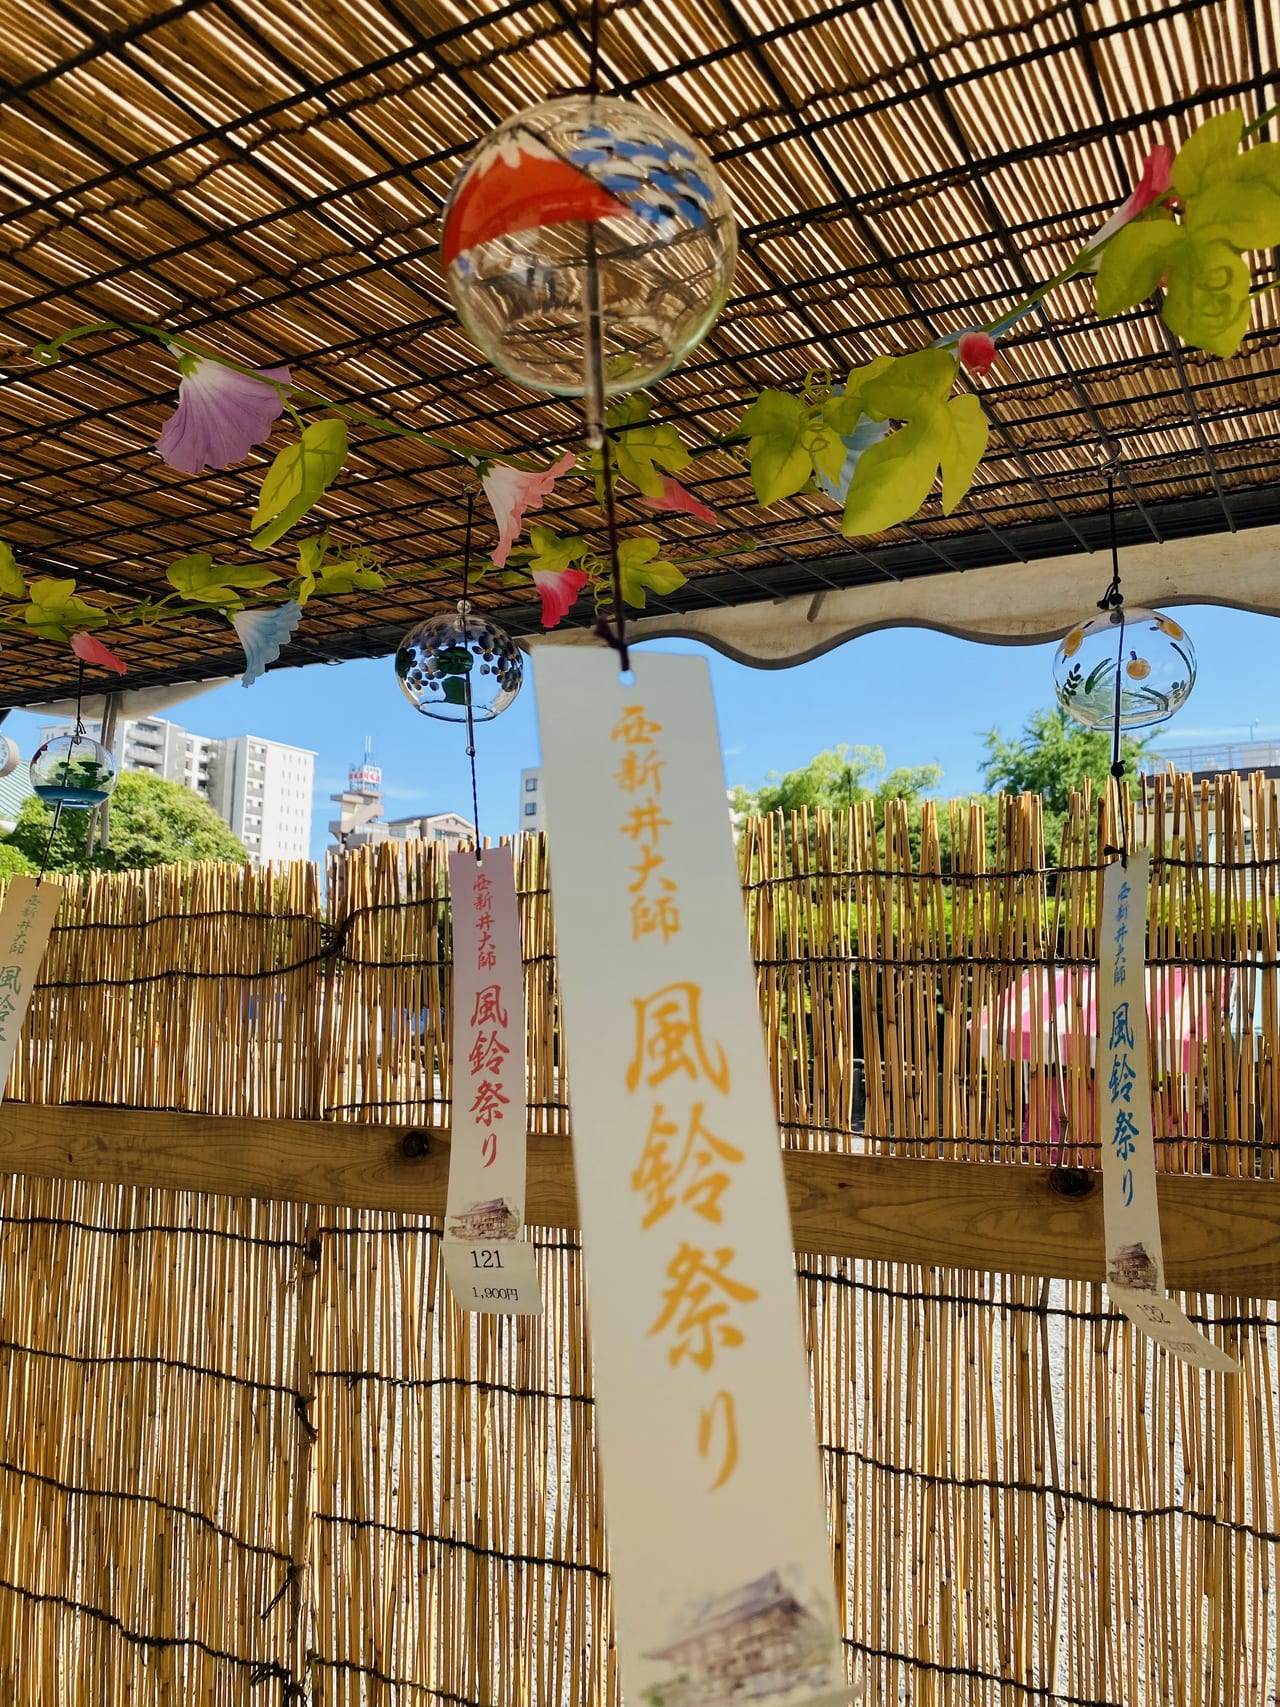 足立区 西新井大師 風鈴祭り は7月31日 日 まで 涼しい音色に癒されてみては 号外net 足立区